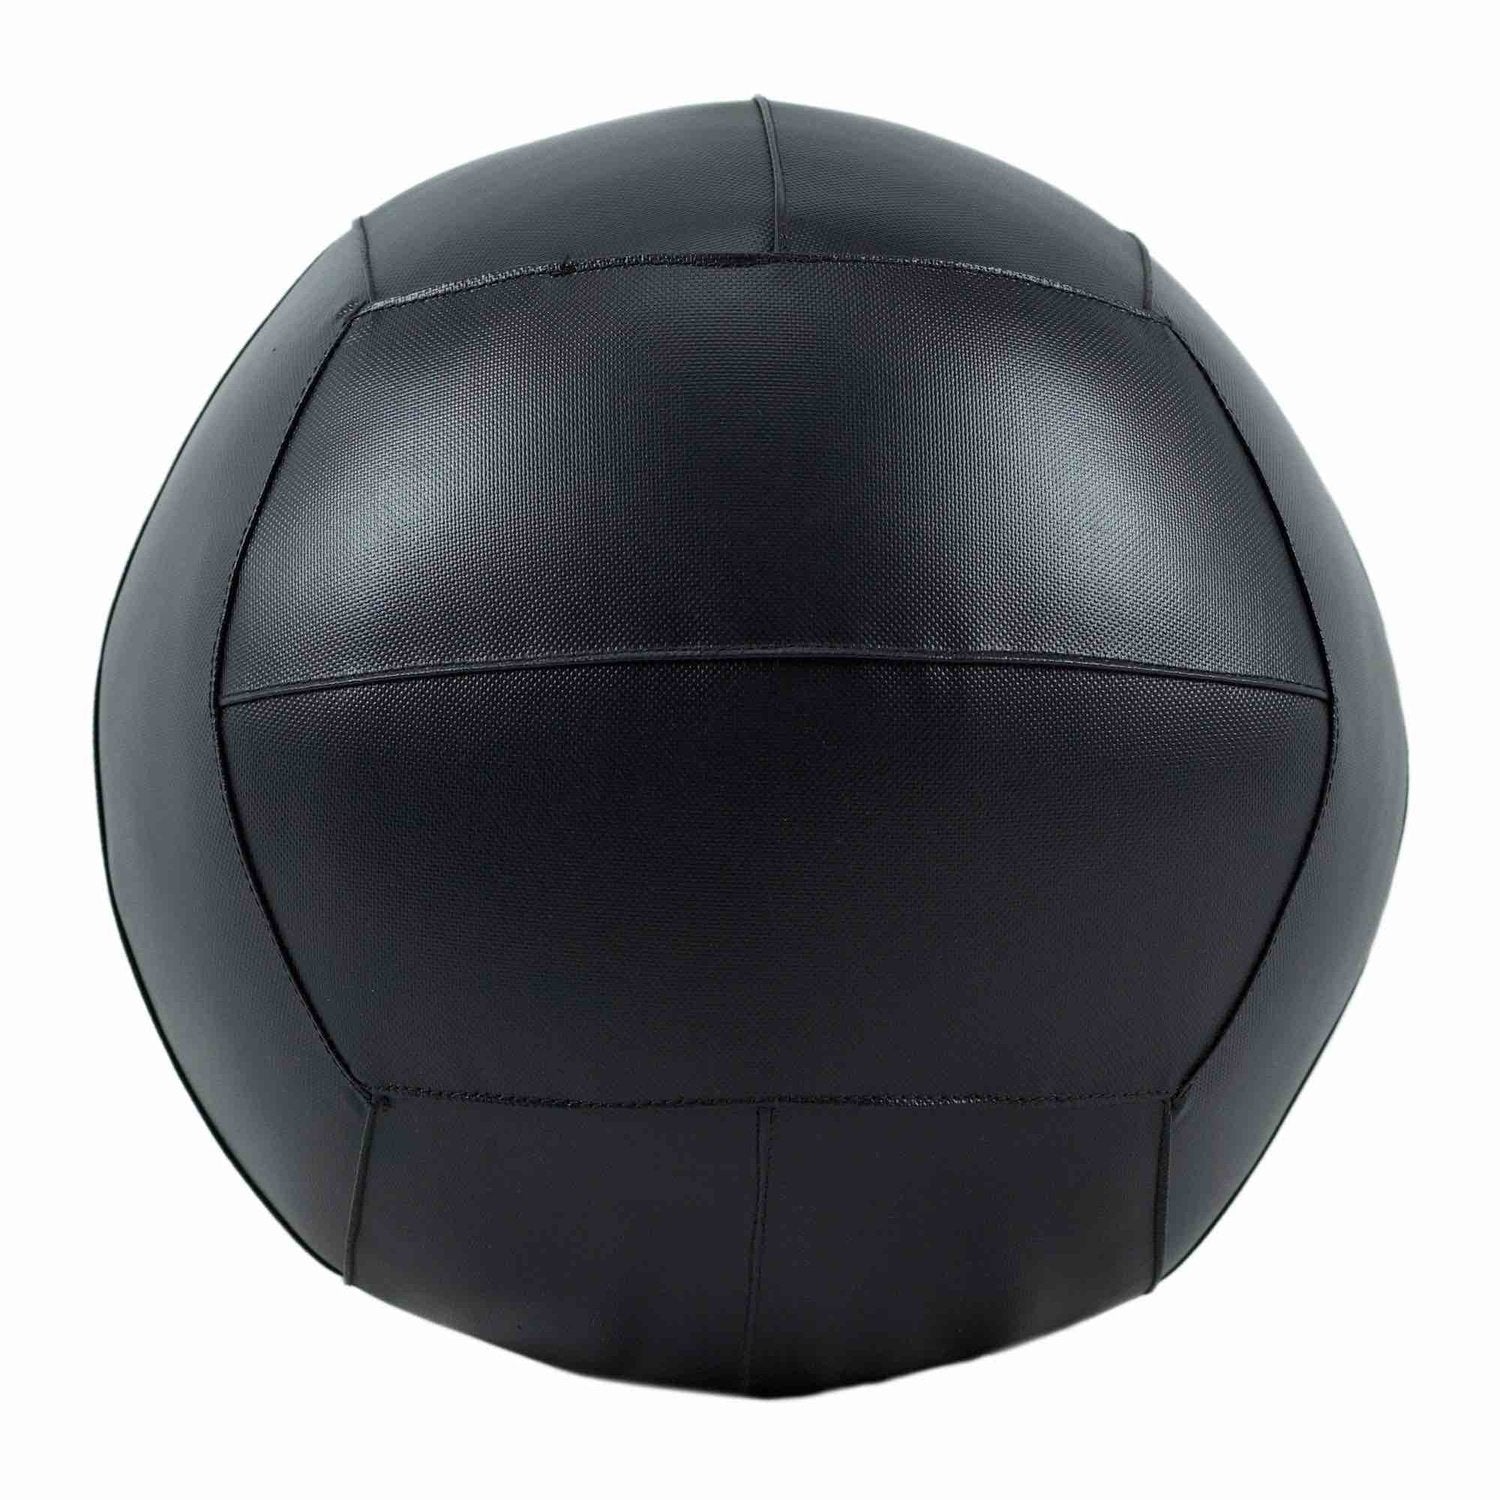 HighPowered Wallball (Medizinball) kaufen bei HighPowered.ch